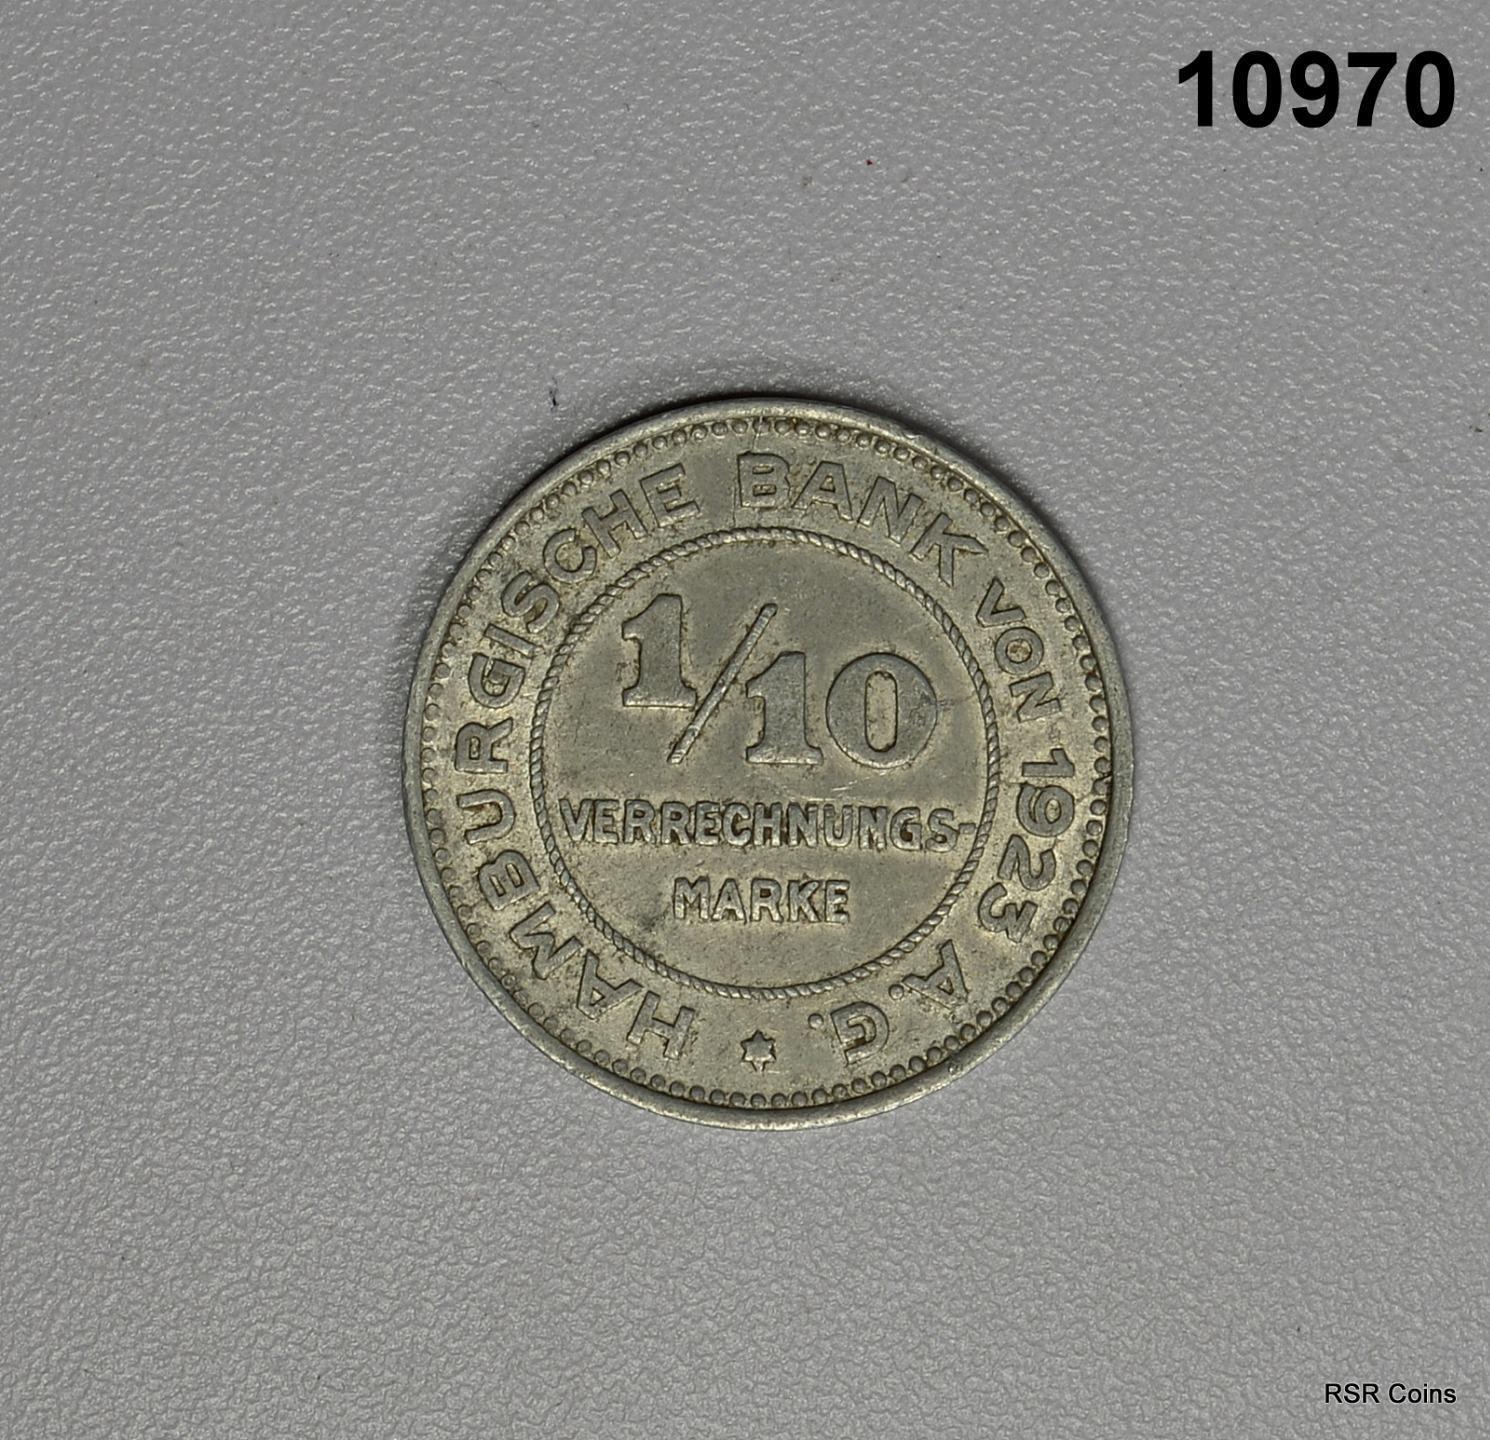 1923 GERMANY HAMBURGISCHE BANK 1/10 MARKE #10970